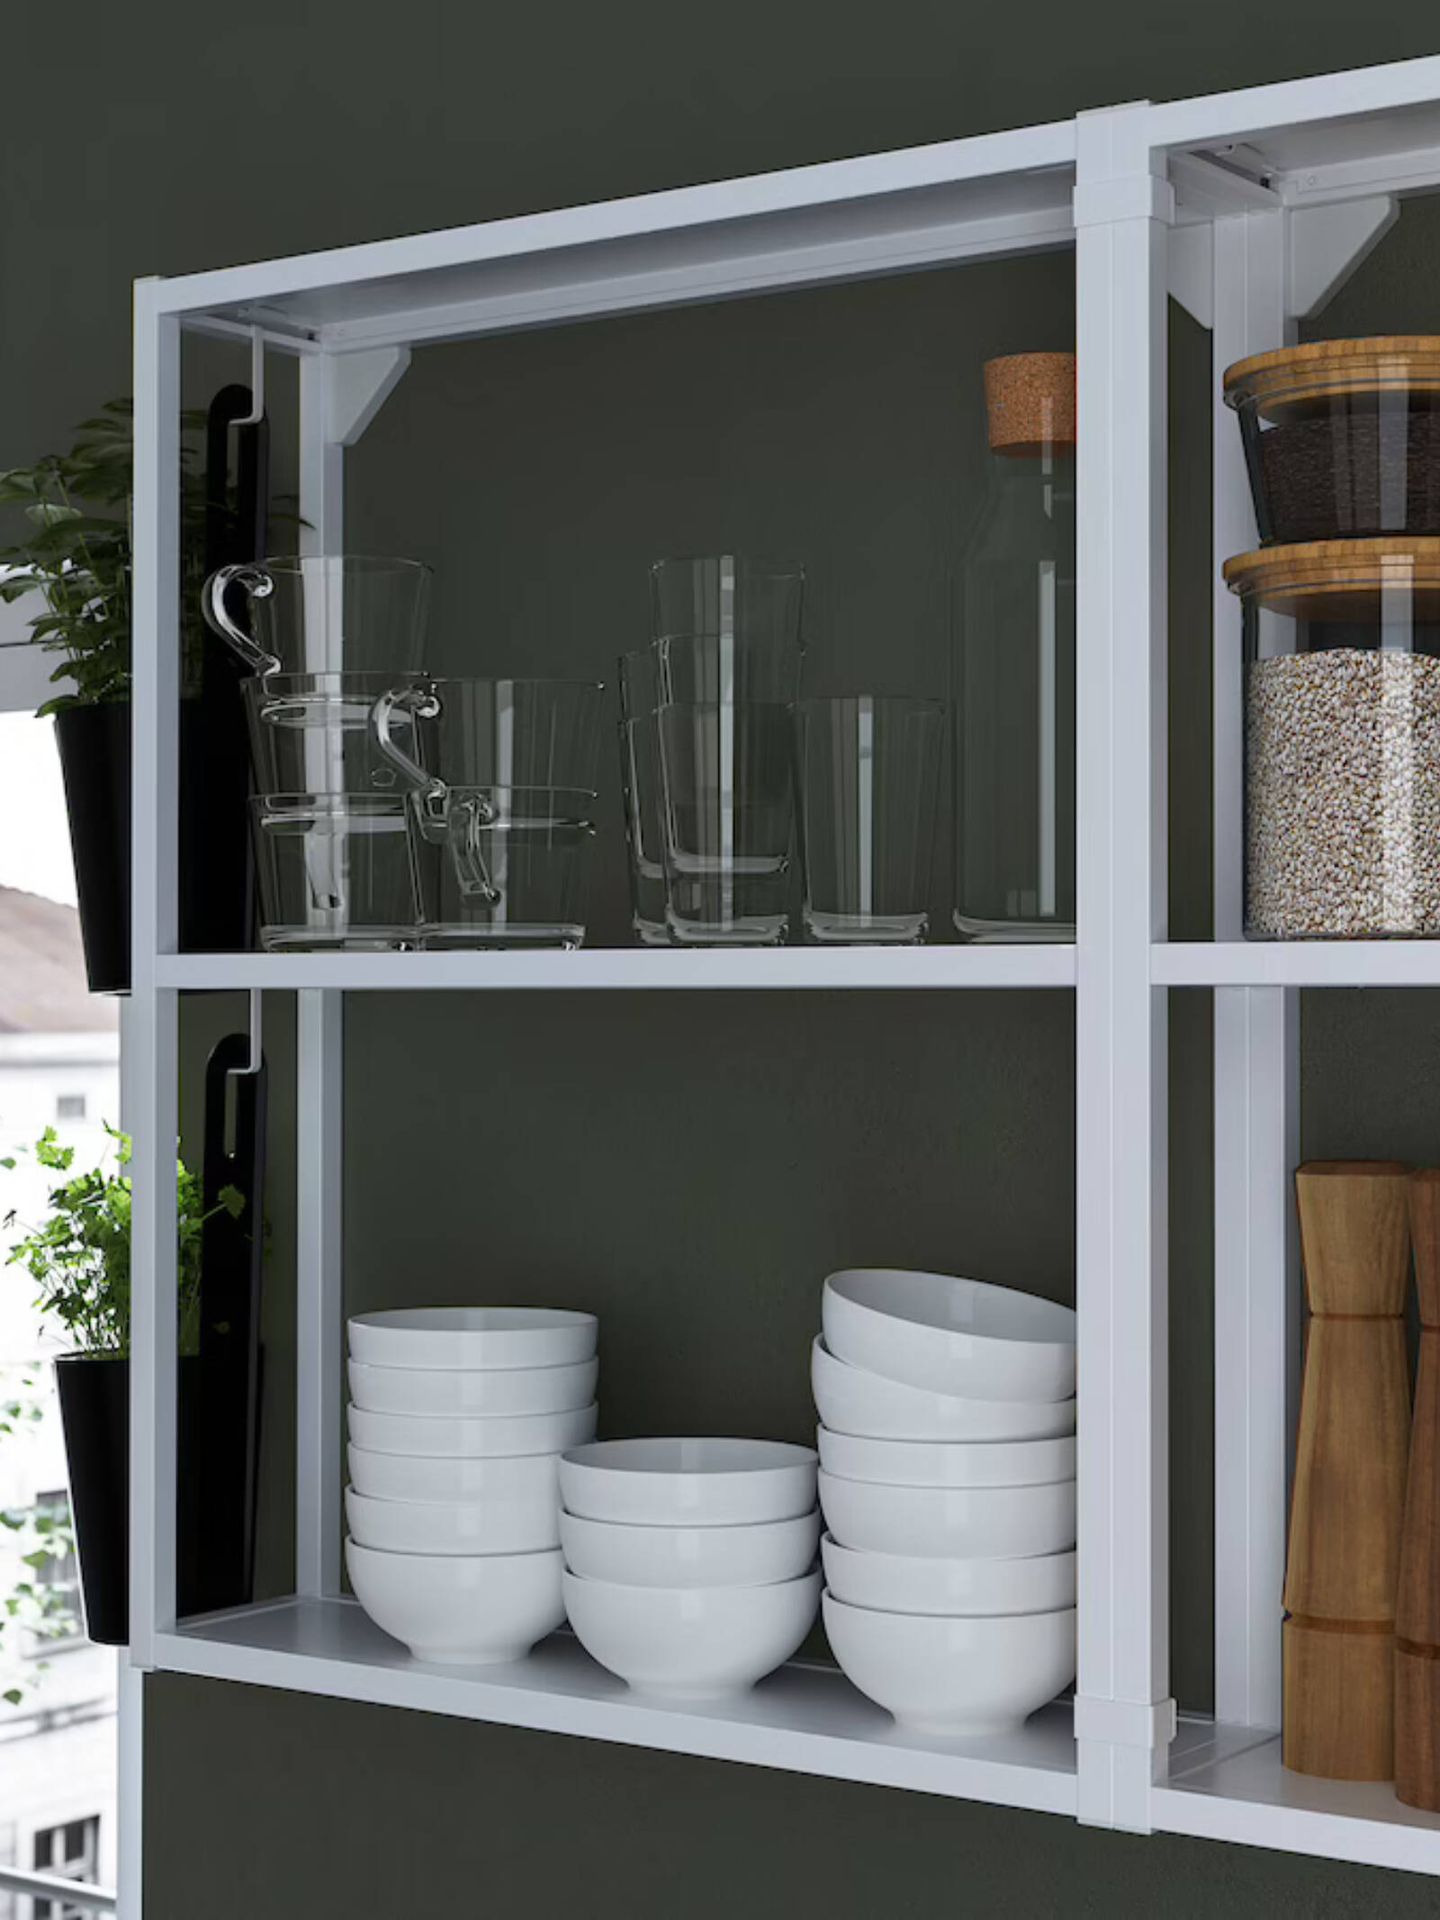 Soluciones de Ikea y Shein Home para cocinas pequeñas. (Cortesía/Ikea)